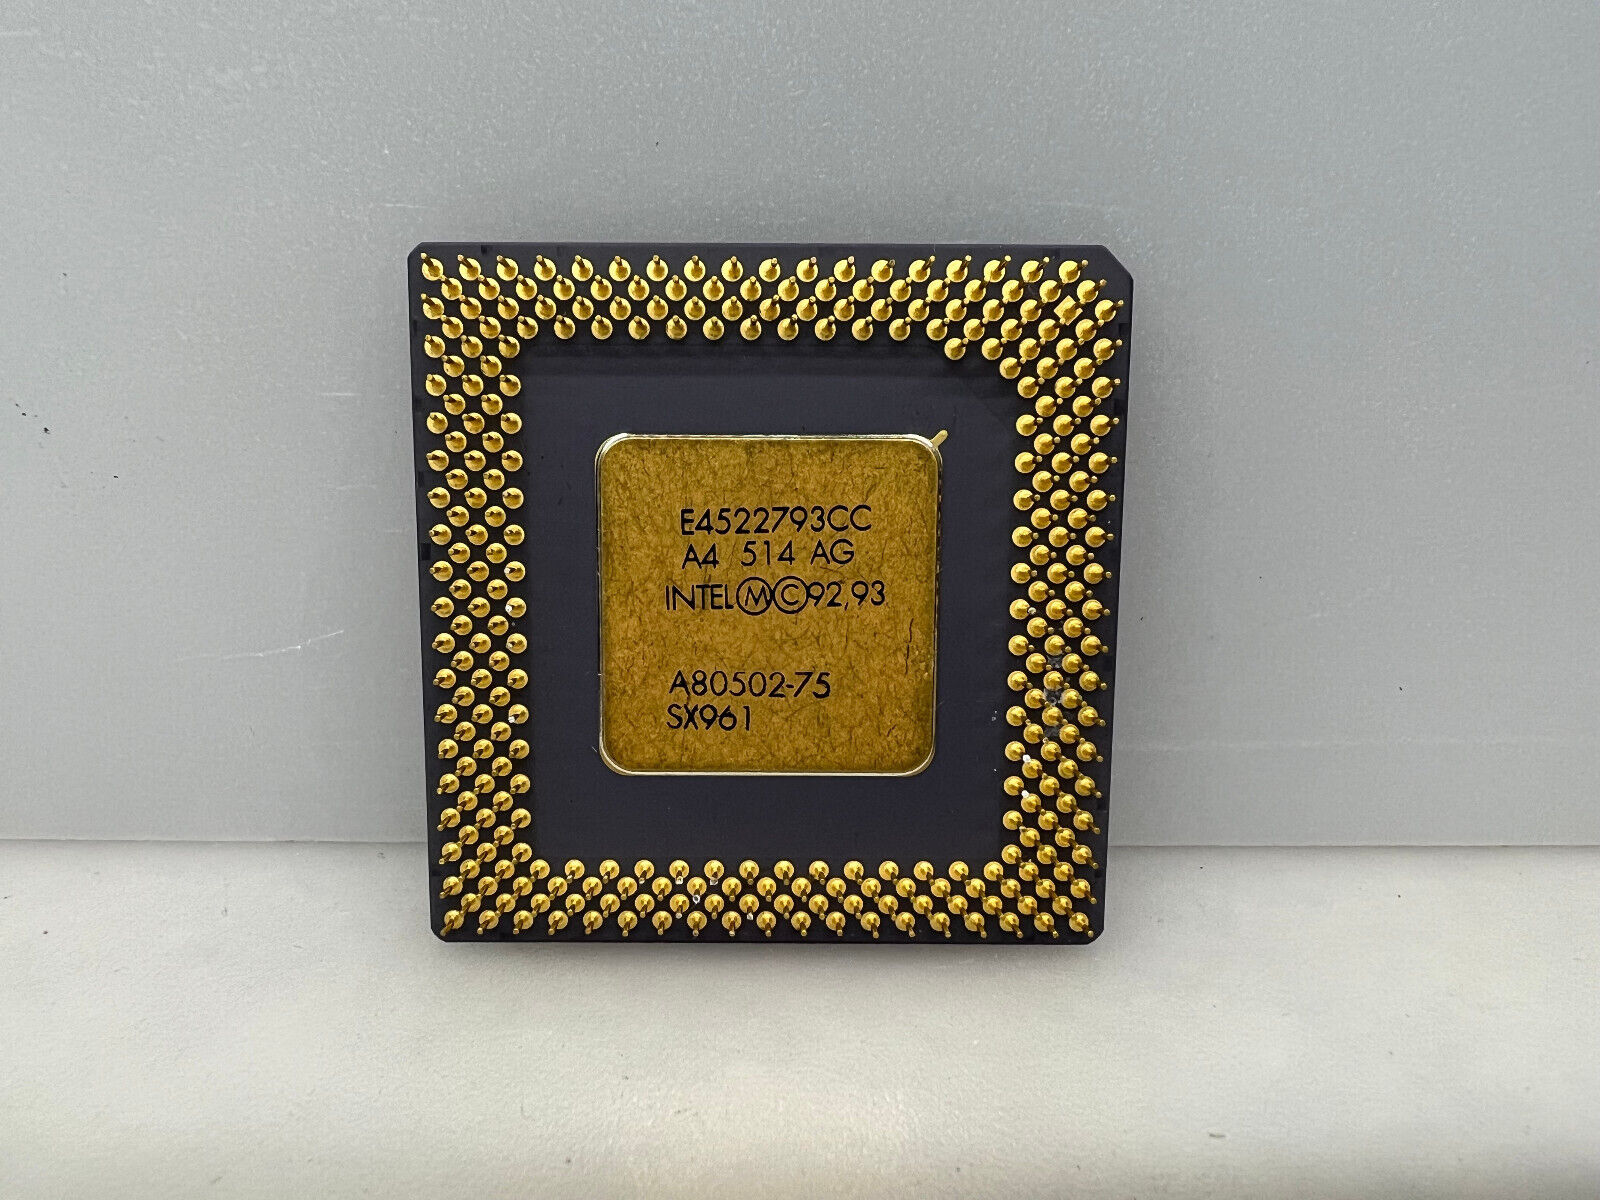 Intel Pentium 75MHz Socket 7 CPU includes 